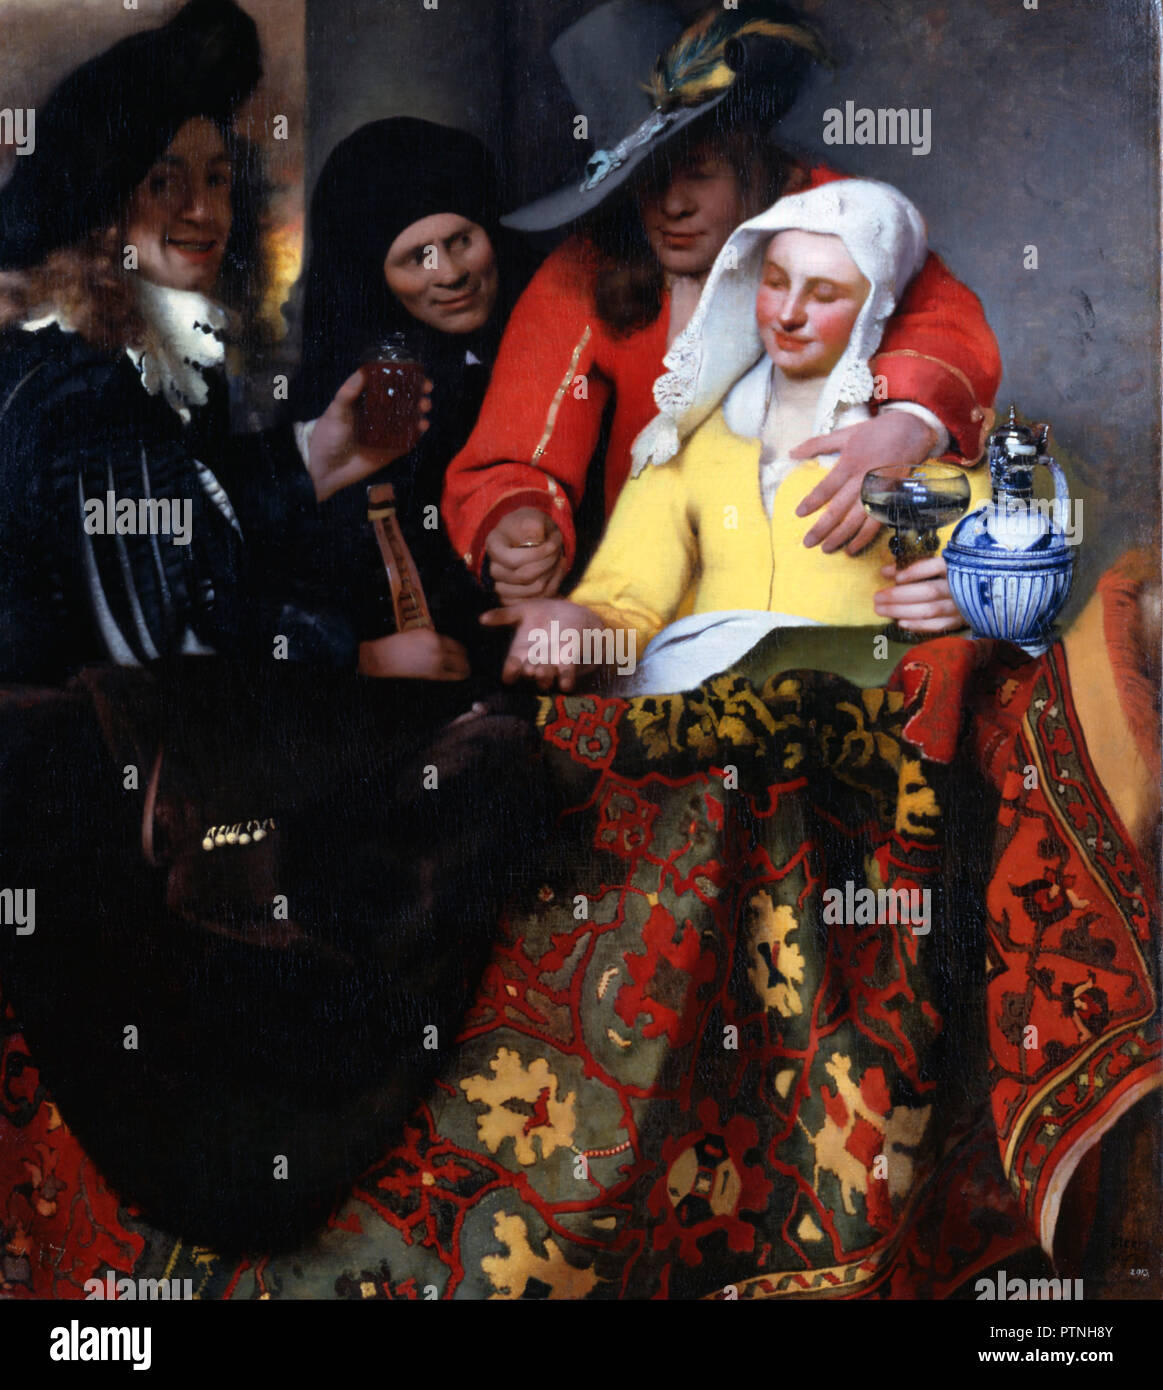 Le Procuress. Date/période : 1656. La peinture. Huile sur toile. Hauteur : 1 430 mm (56,29 po) ; largeur : 1 300 mm (51.18 in). Auteur : Johannes Vermeer. JAN VERMEER. VERMEER, JOHANNES. Vermeer, Jan (Johannes). Banque D'Images